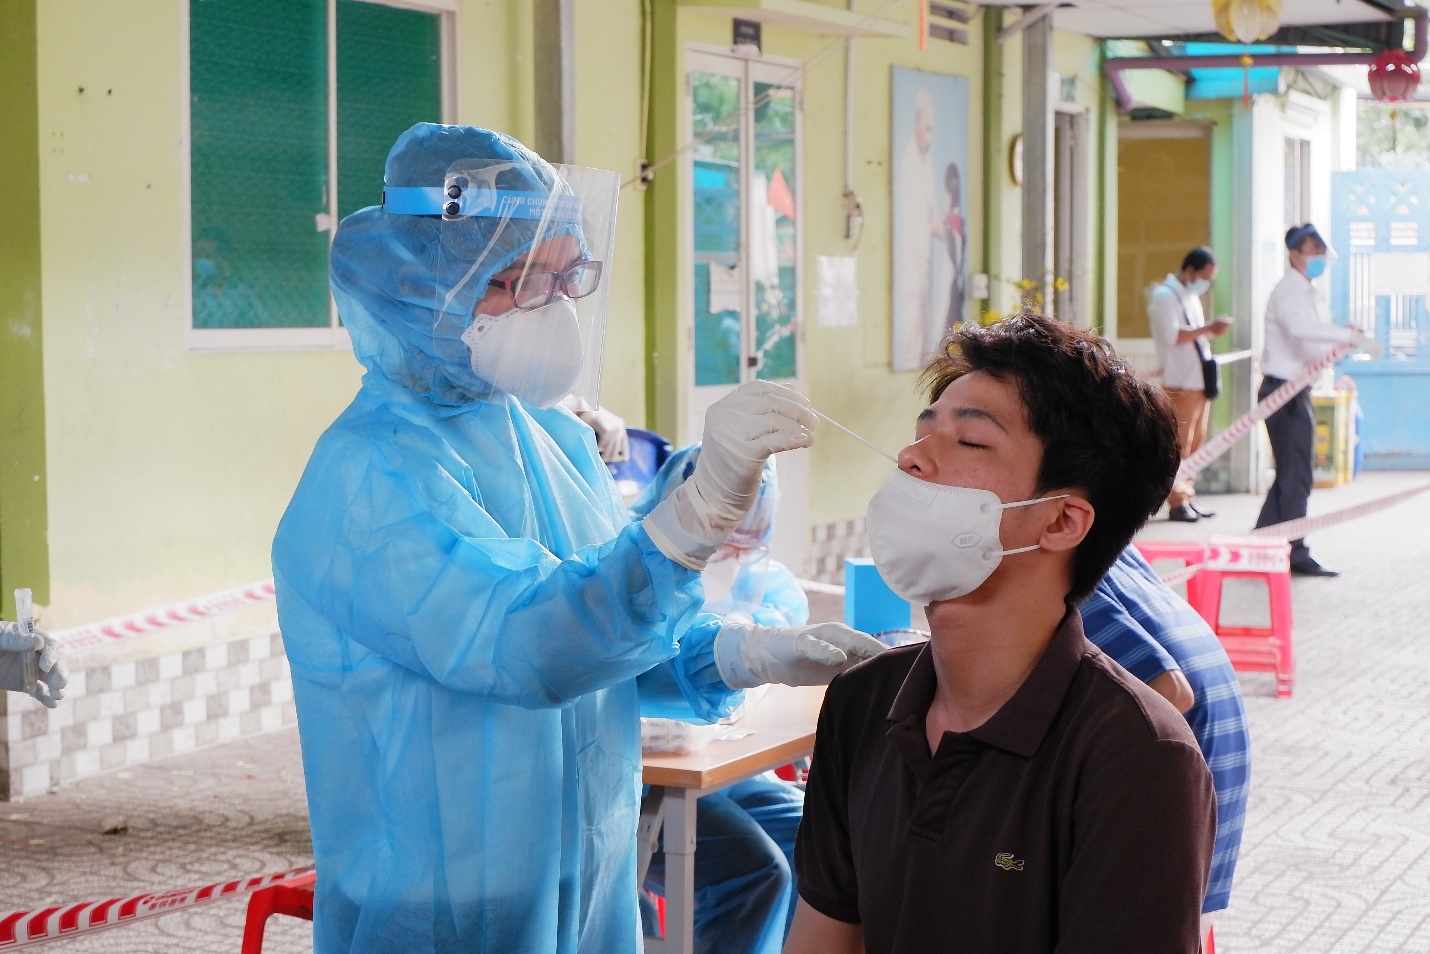 Sau khi lấy 570 mẫu xét nghiệm từ nhân viên sân bay Tân Sơn Nhất, ngành y tế phát hiện 2 trường hợp có kháng thể với virus SARS- CoV-2 trong cộng đồng. Ảnh: HCDC